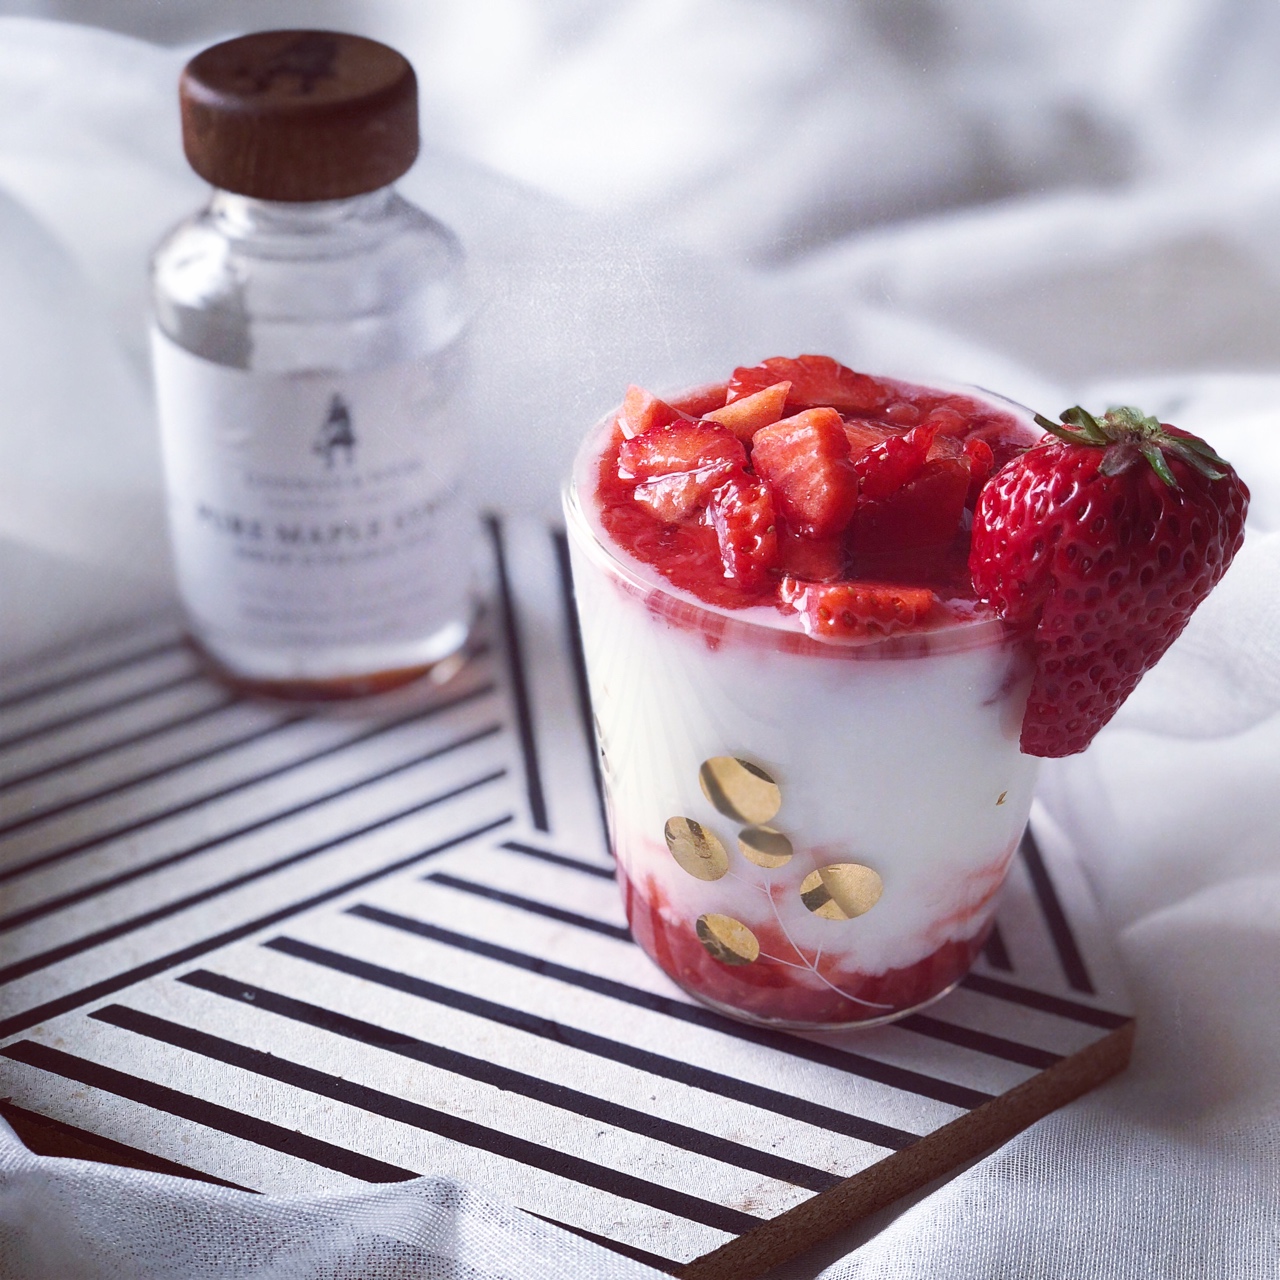 草莓酸奶杯